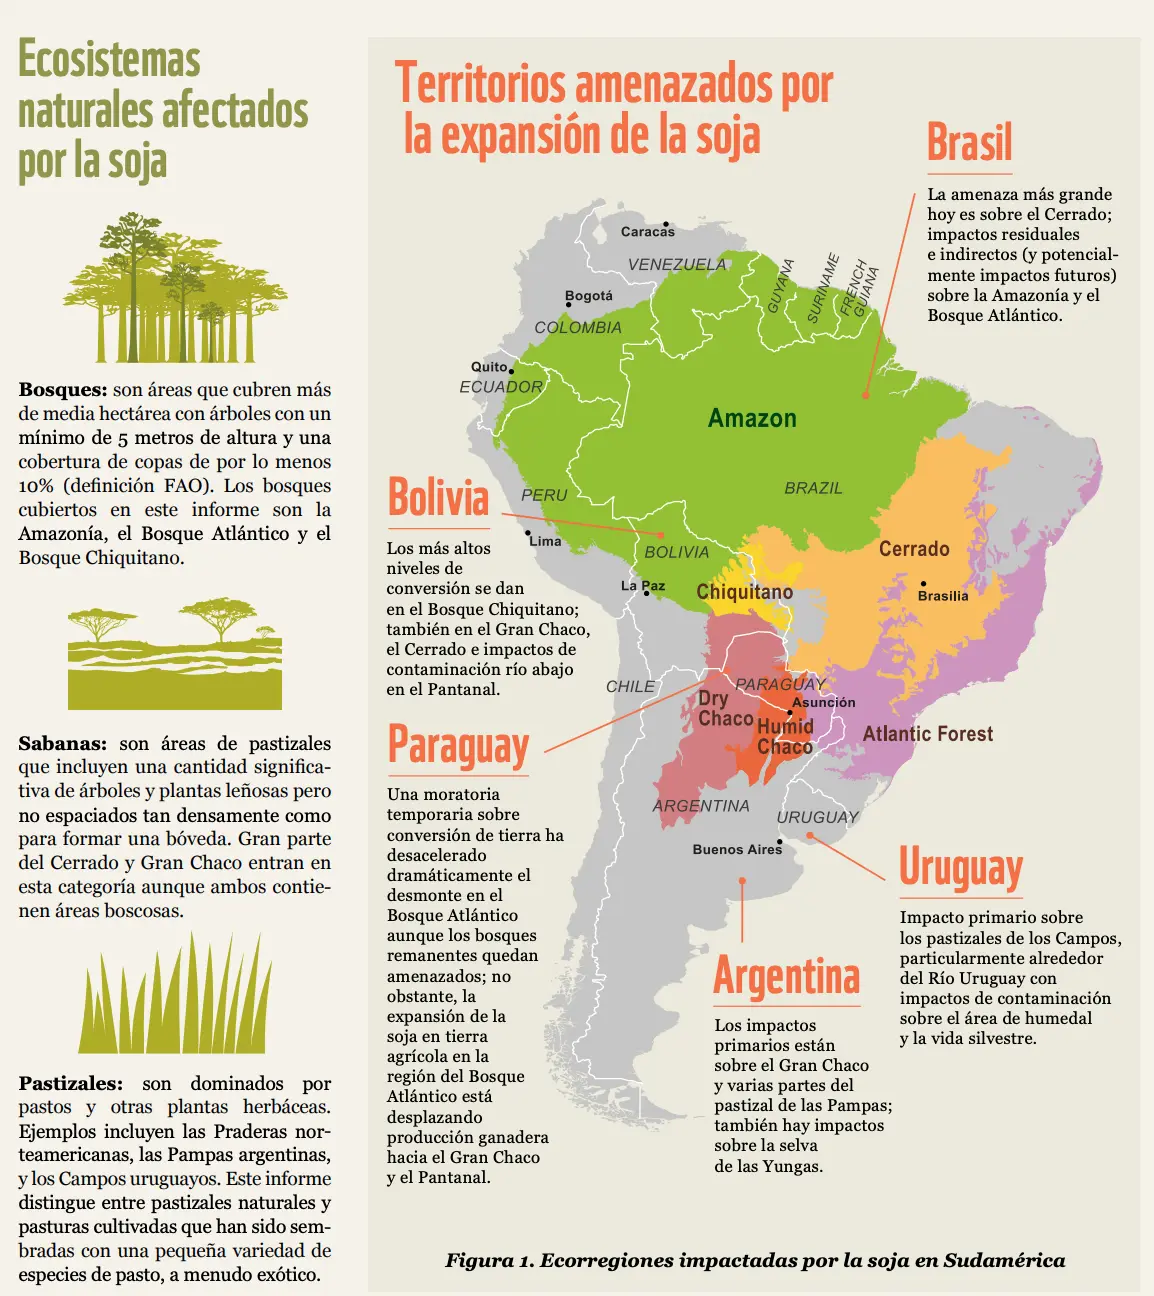 expansion de la soja en argentina resumen - Cuáles son las causas de la expansion de soja en Argentina